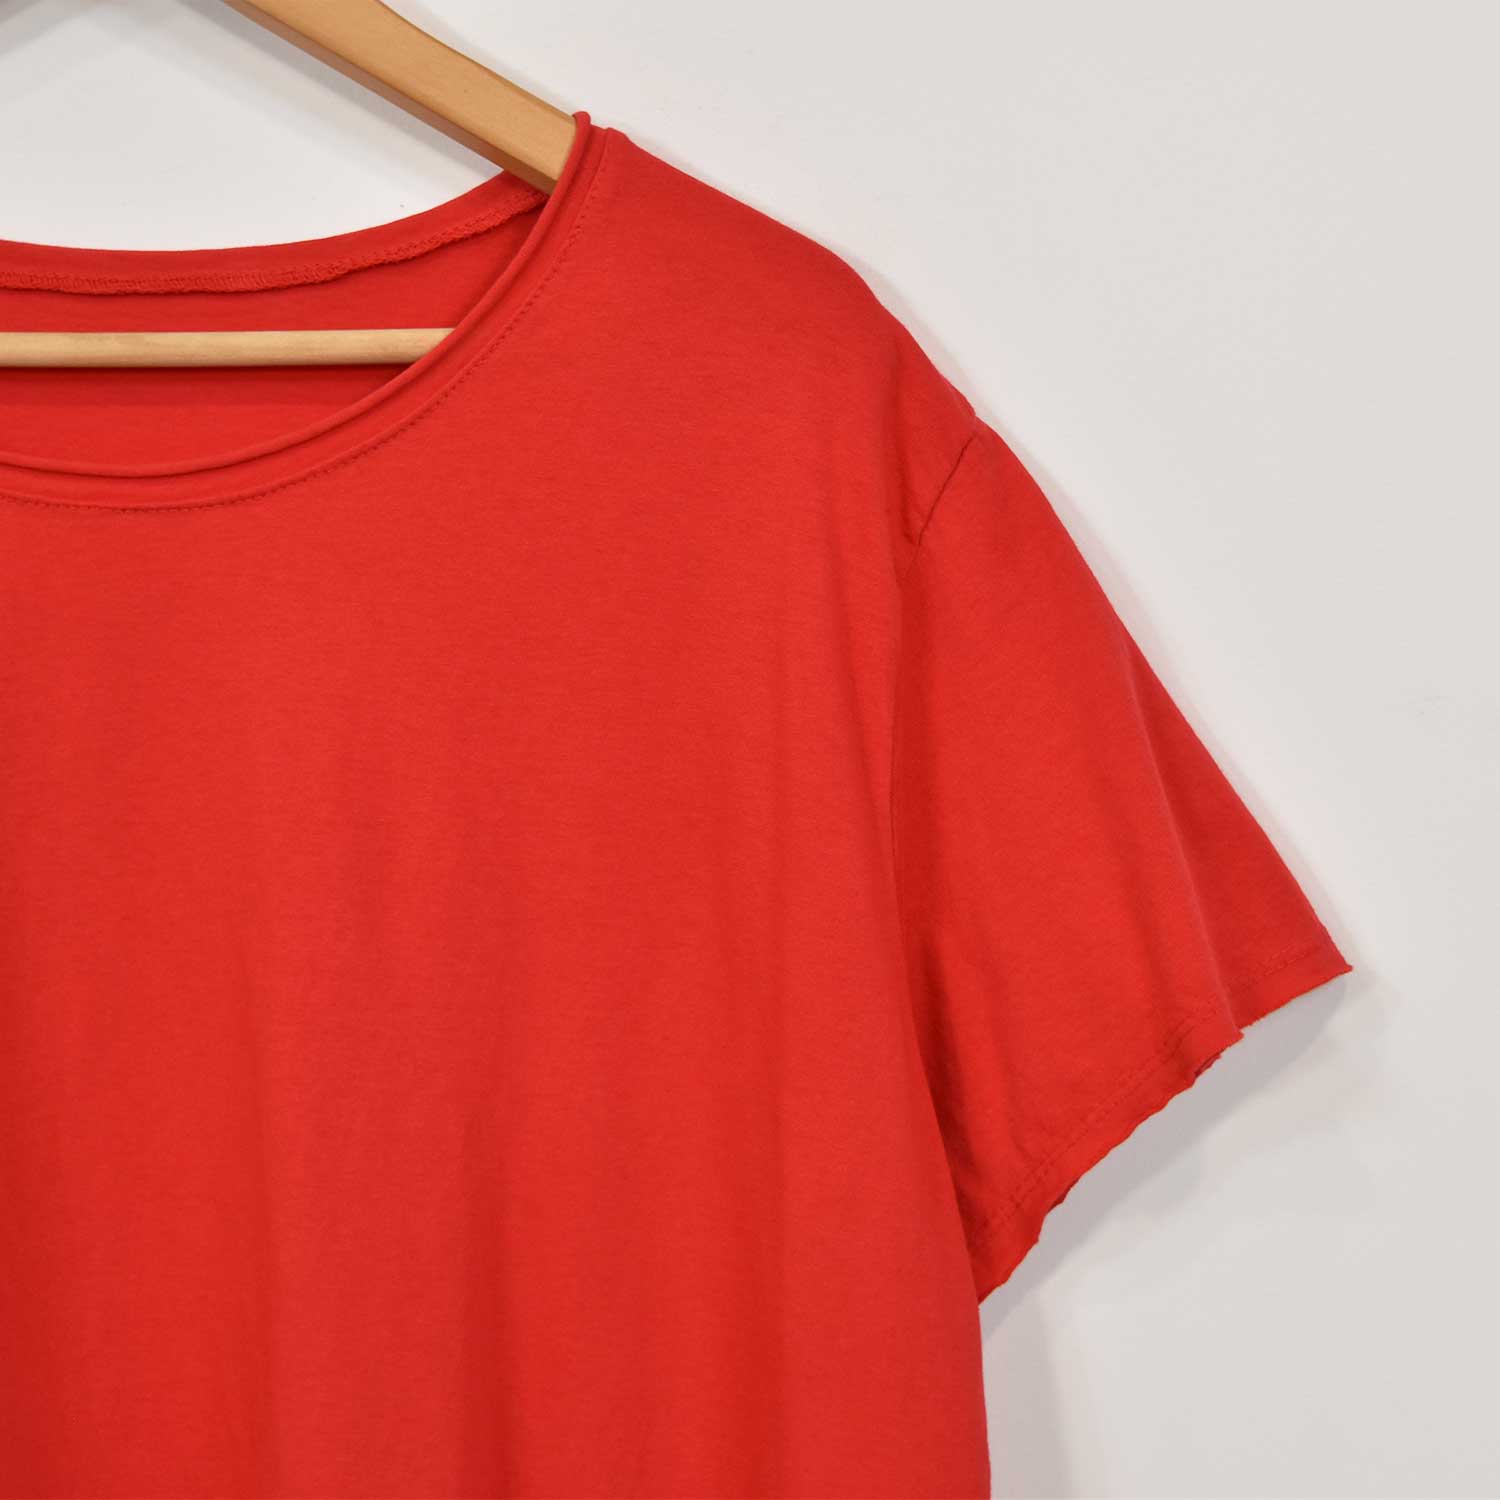 Camiseta asimétrica manga corta roja